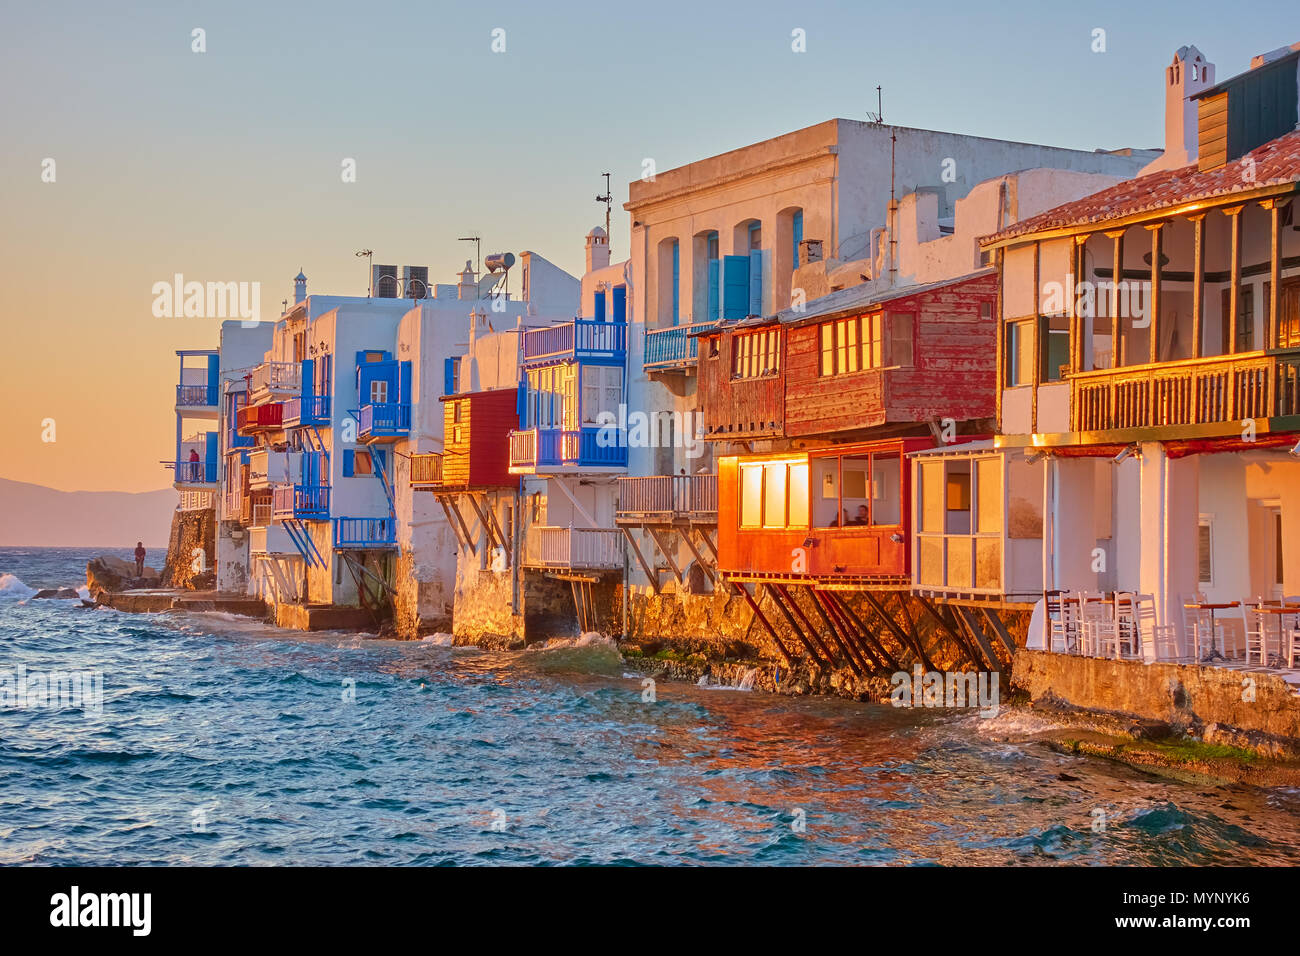 La petite Venise dans l'île de Mykonos au coucher du soleil, la Grèce Banque D'Images